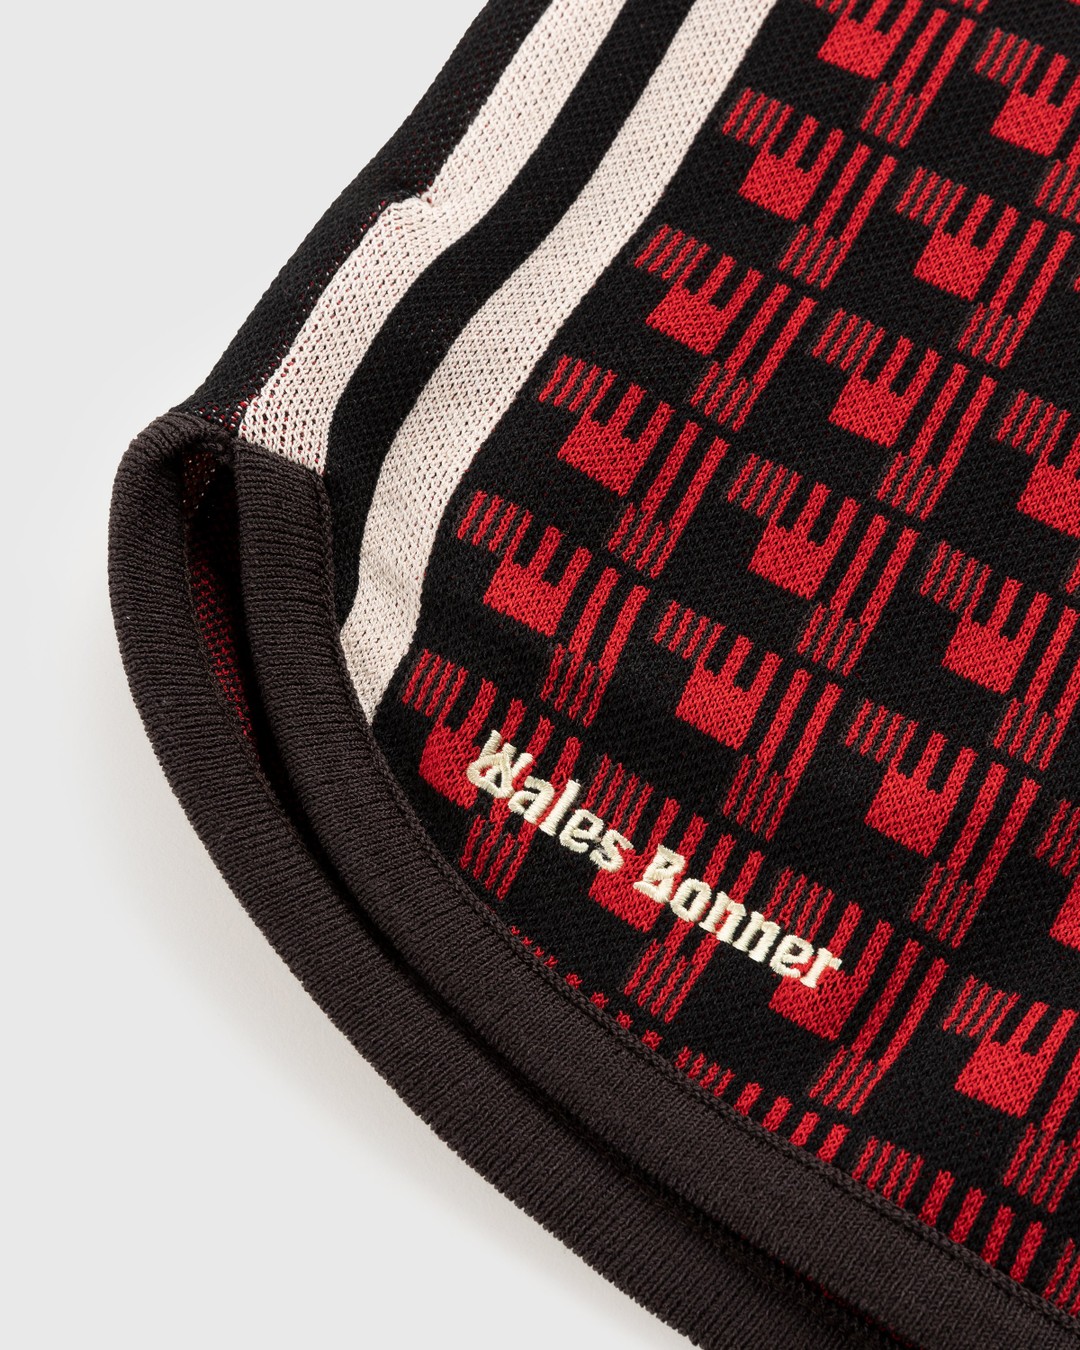 Adidas x Wales Bonner – WB Knit Shorts Scarlet/Black - Shorts - Red - Image 3